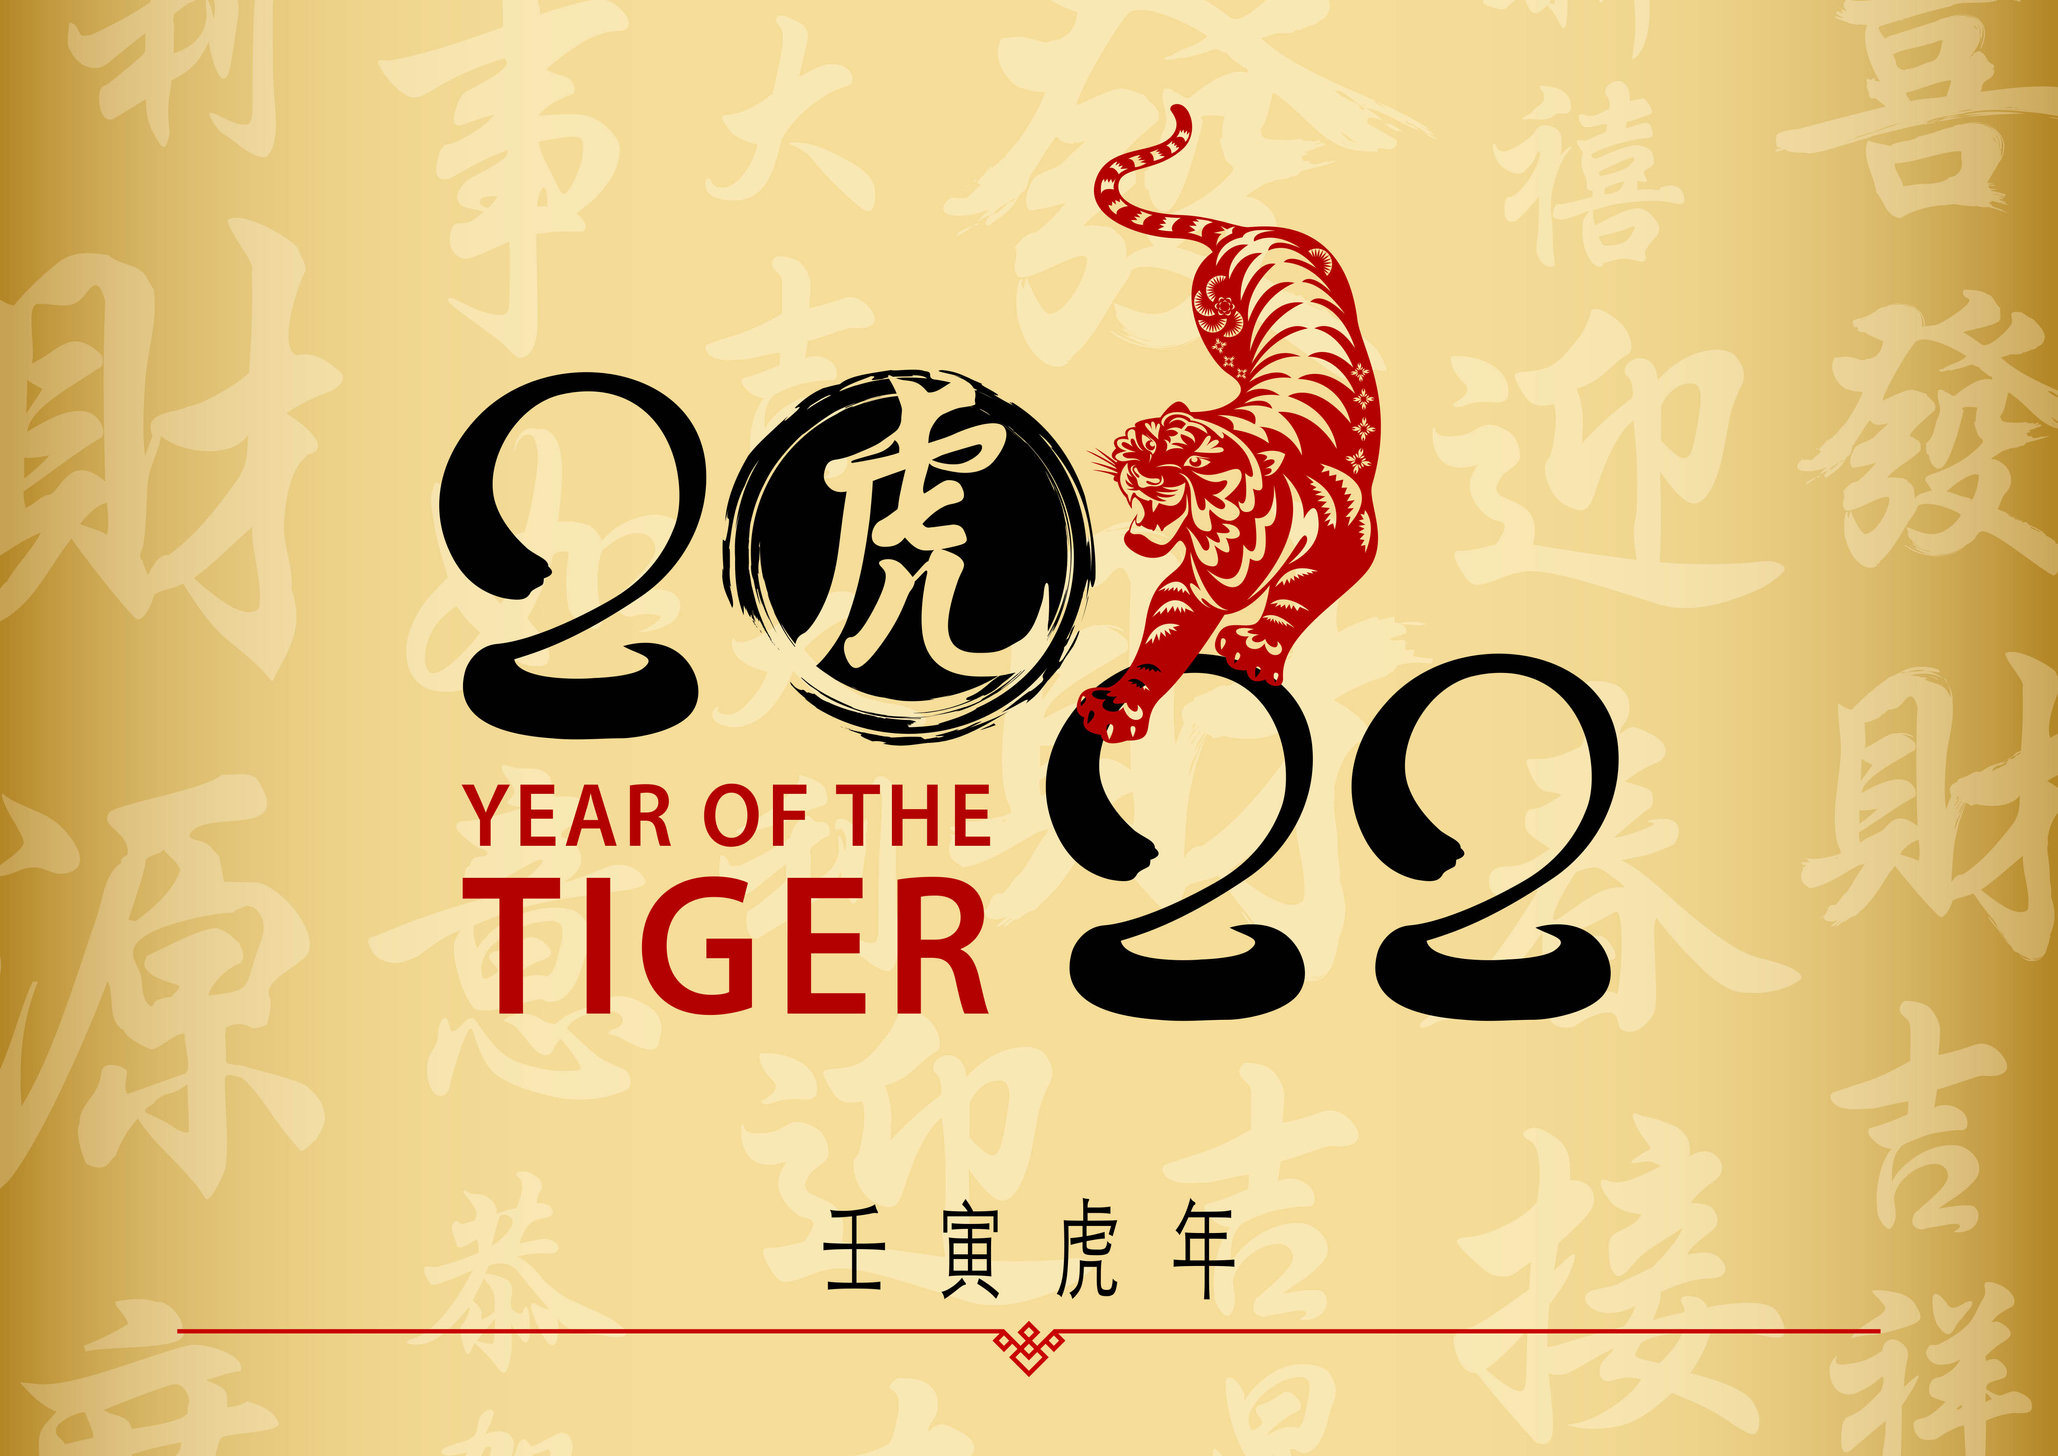 Според китайския календар 2022 ра е година на Черния воден тигър